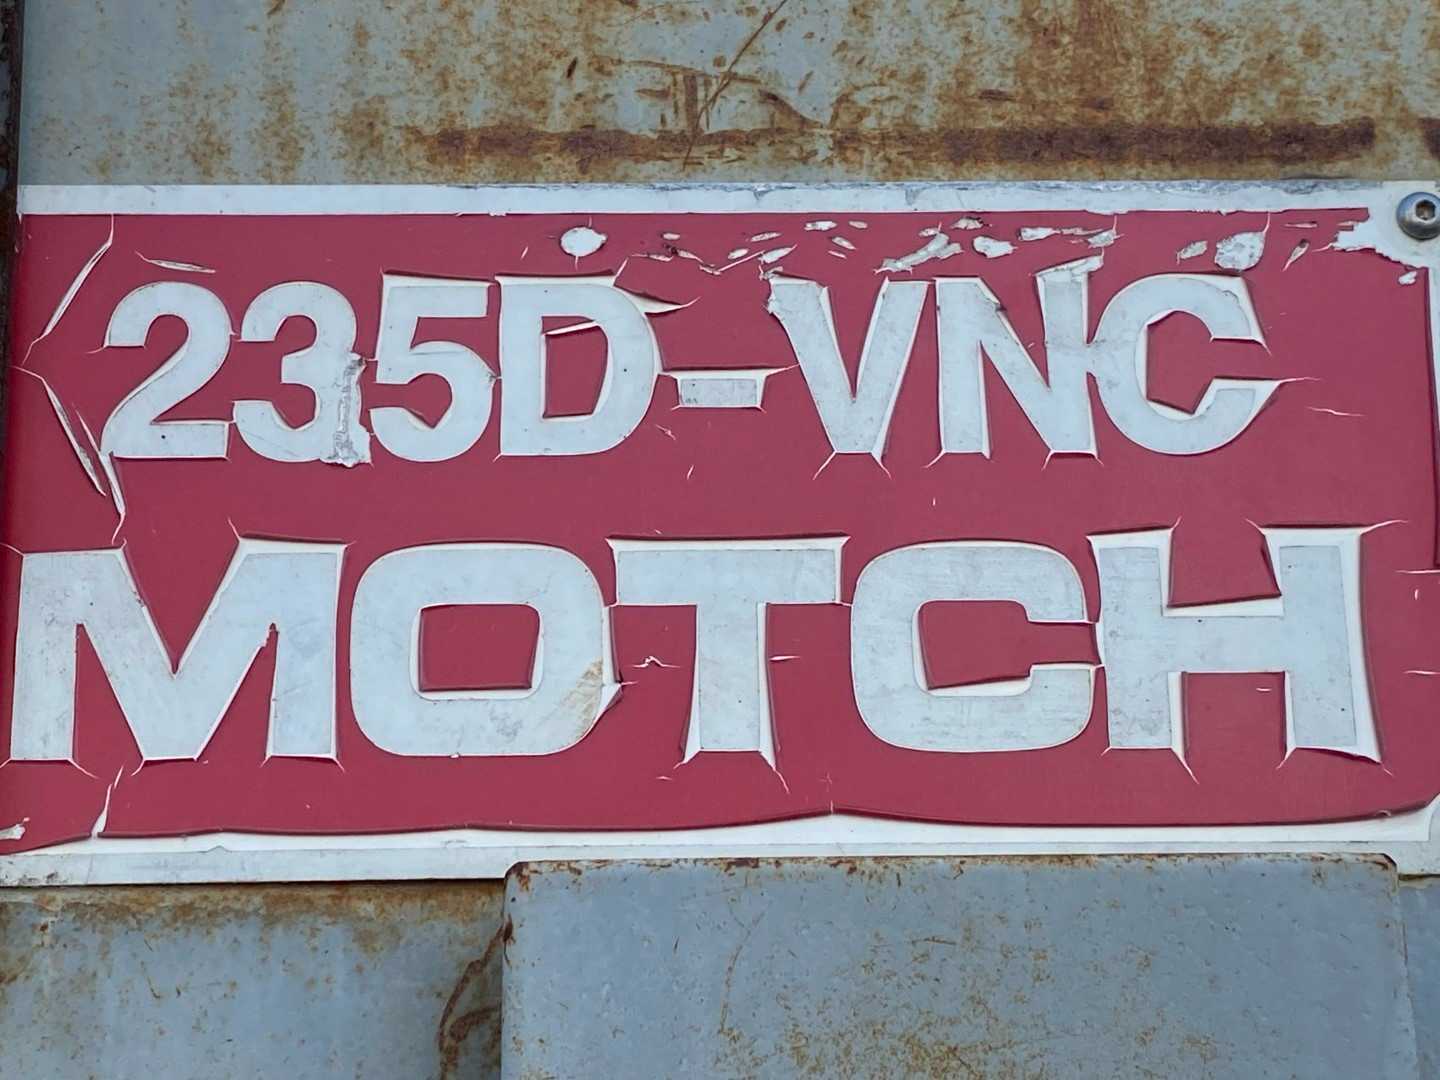 Motch Manufacturing Div. Vertical Lathe Machine